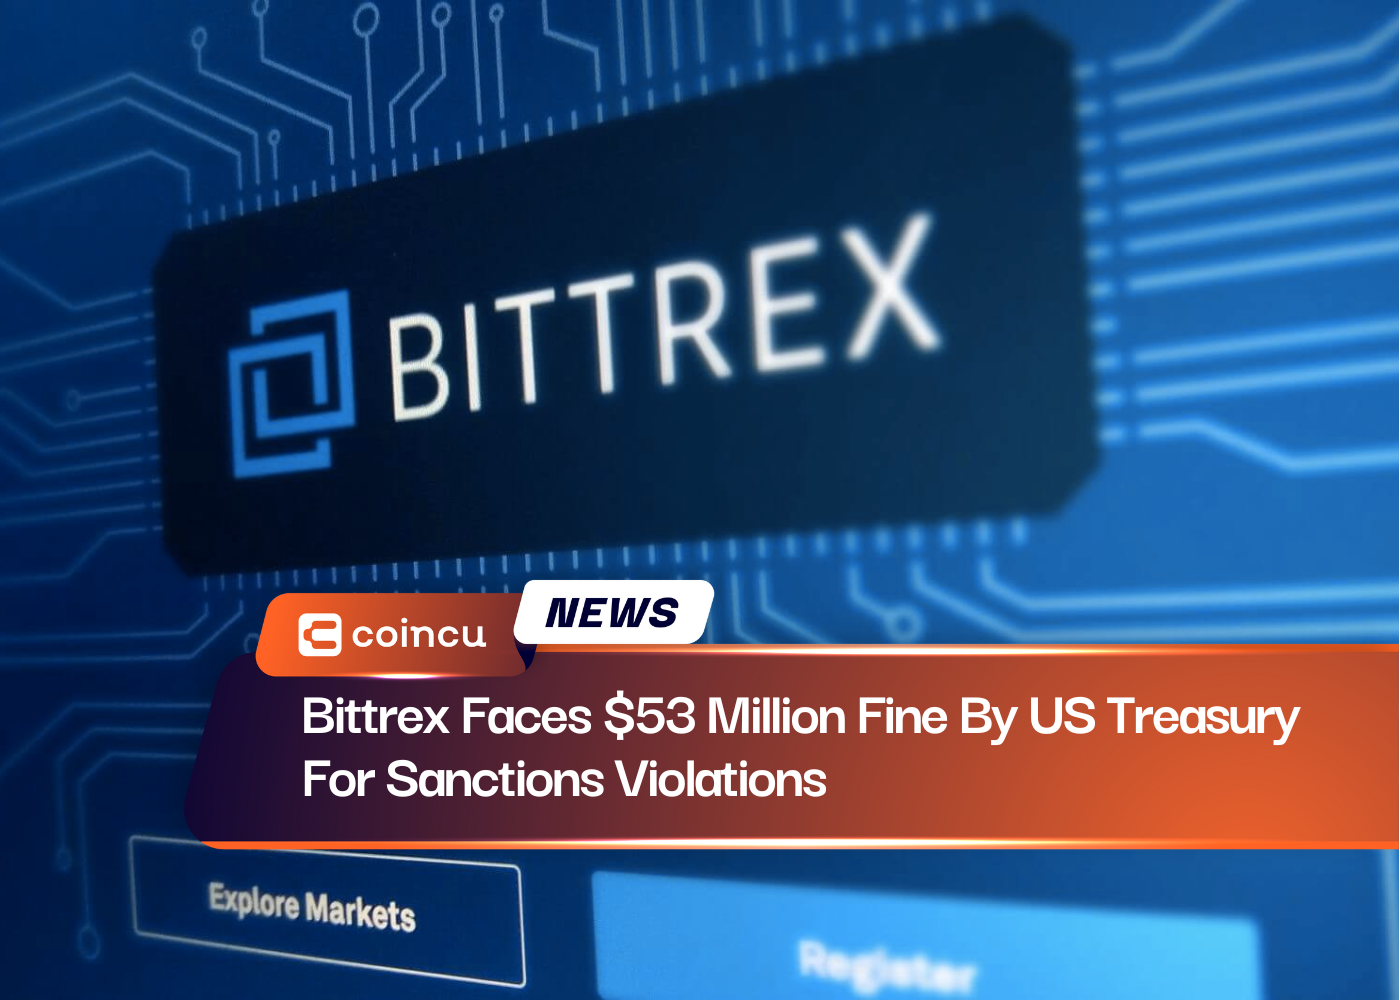 Bittrex fait face à une amende de 53 millions de dollars de la part du Trésor américain pour violation des sanctions